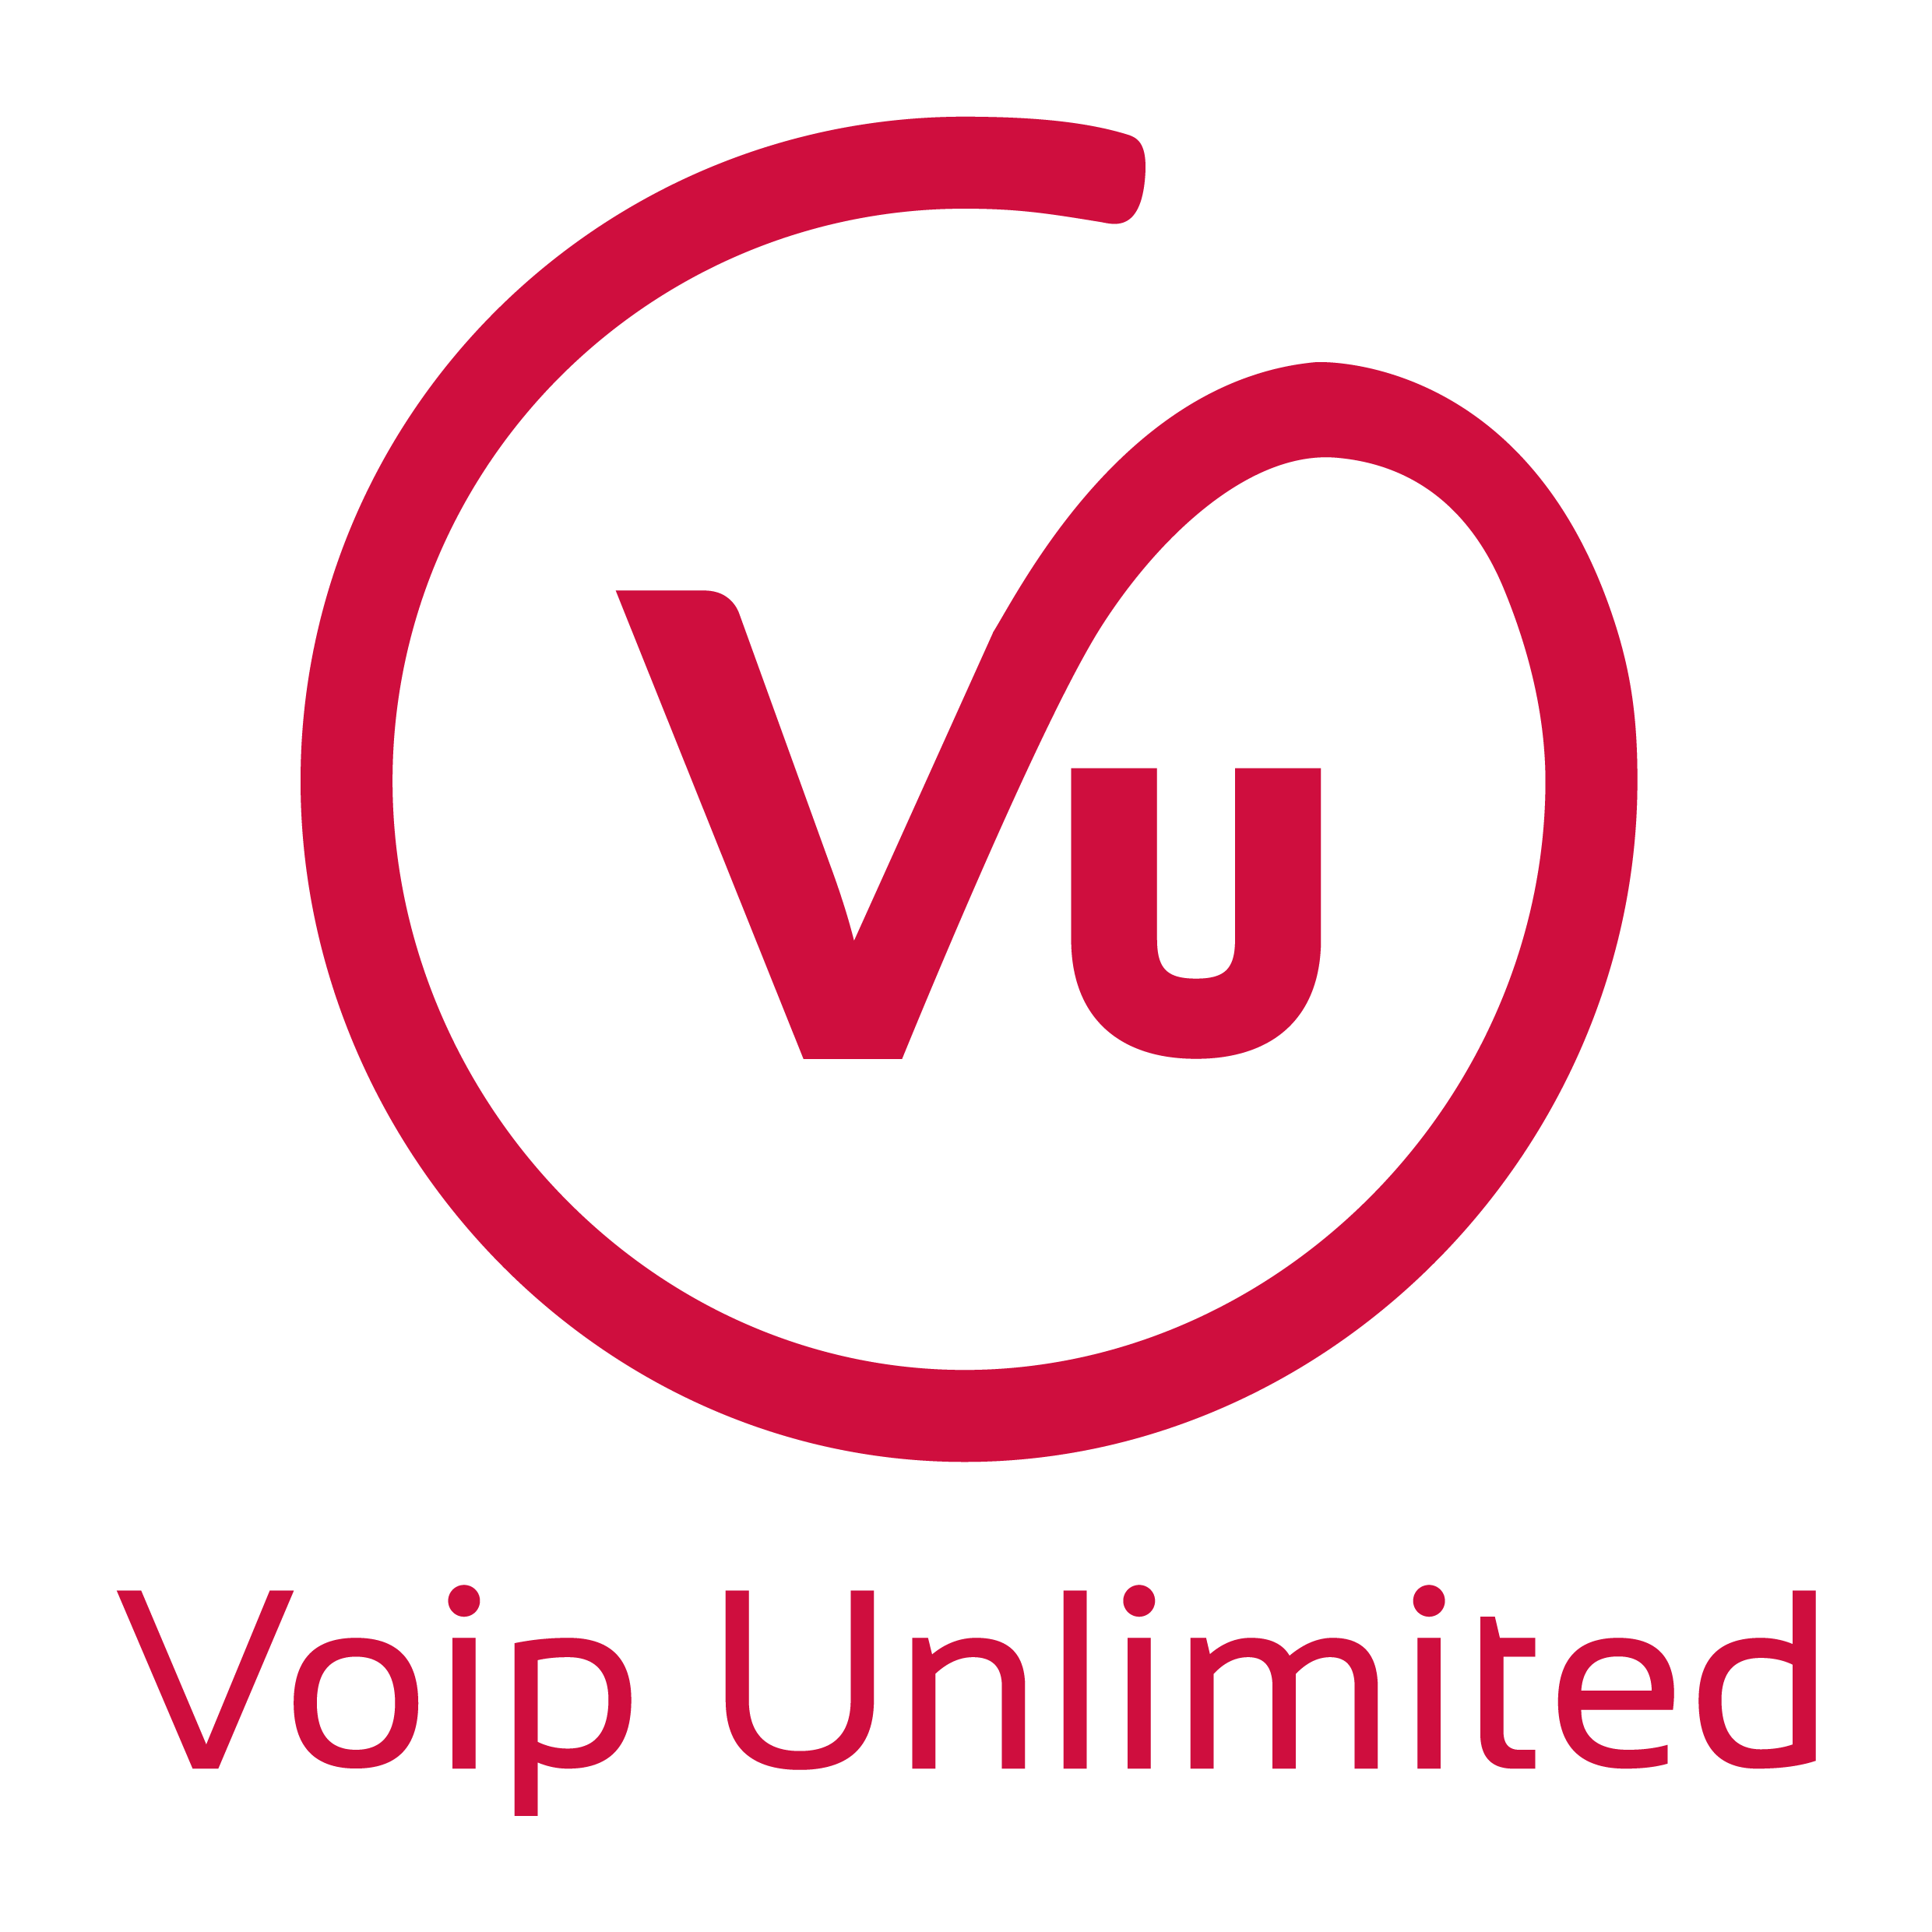 Vu Logo - Channel: Data